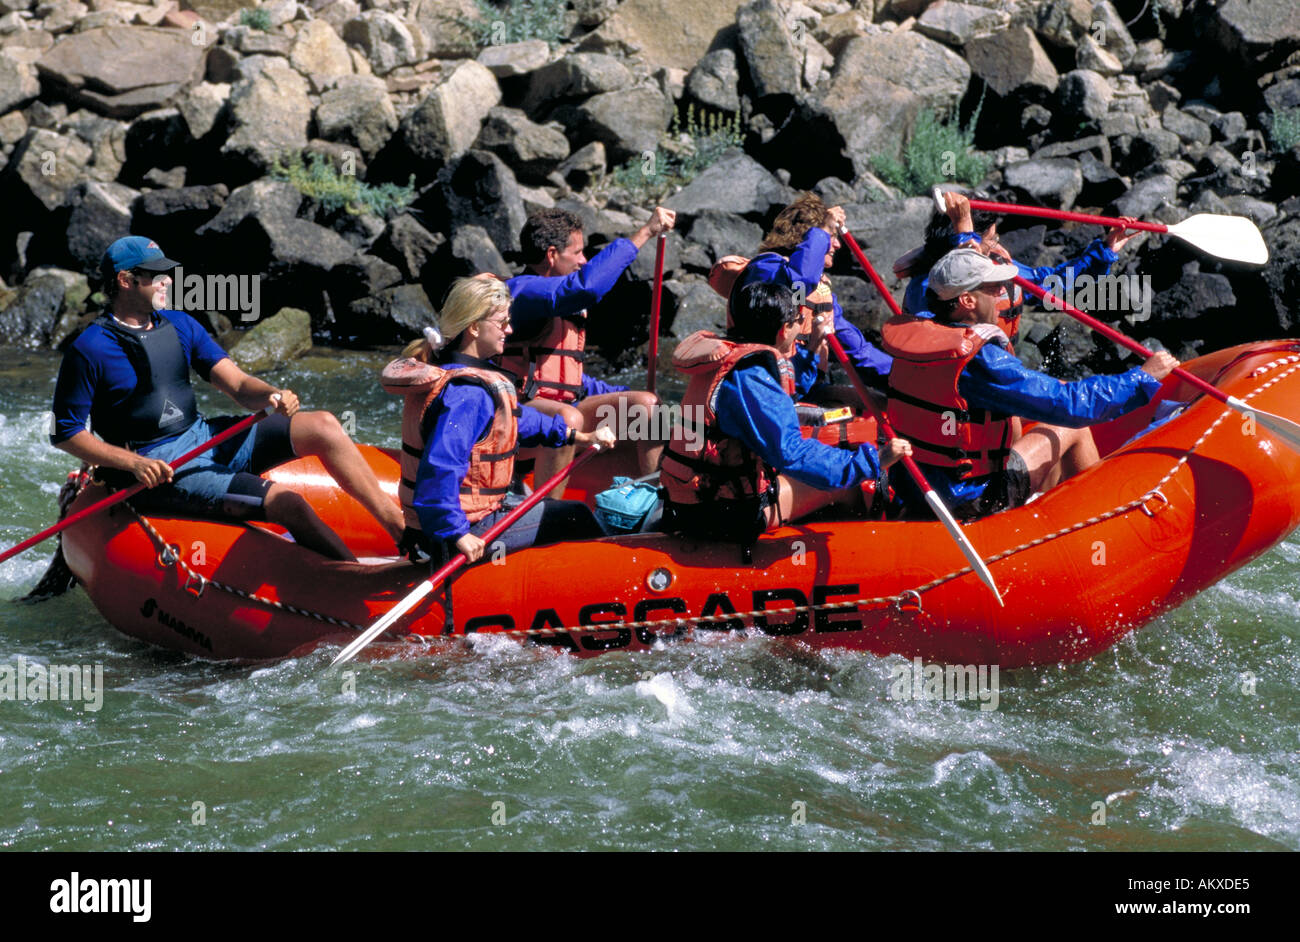 Eine Gruppe von Wildwasser Sparren trotzen die wilden Gewässer des Flusses "Peyete" an Bord ein rotes Schlauchboot Peyete Boise, Idaho Stockfoto